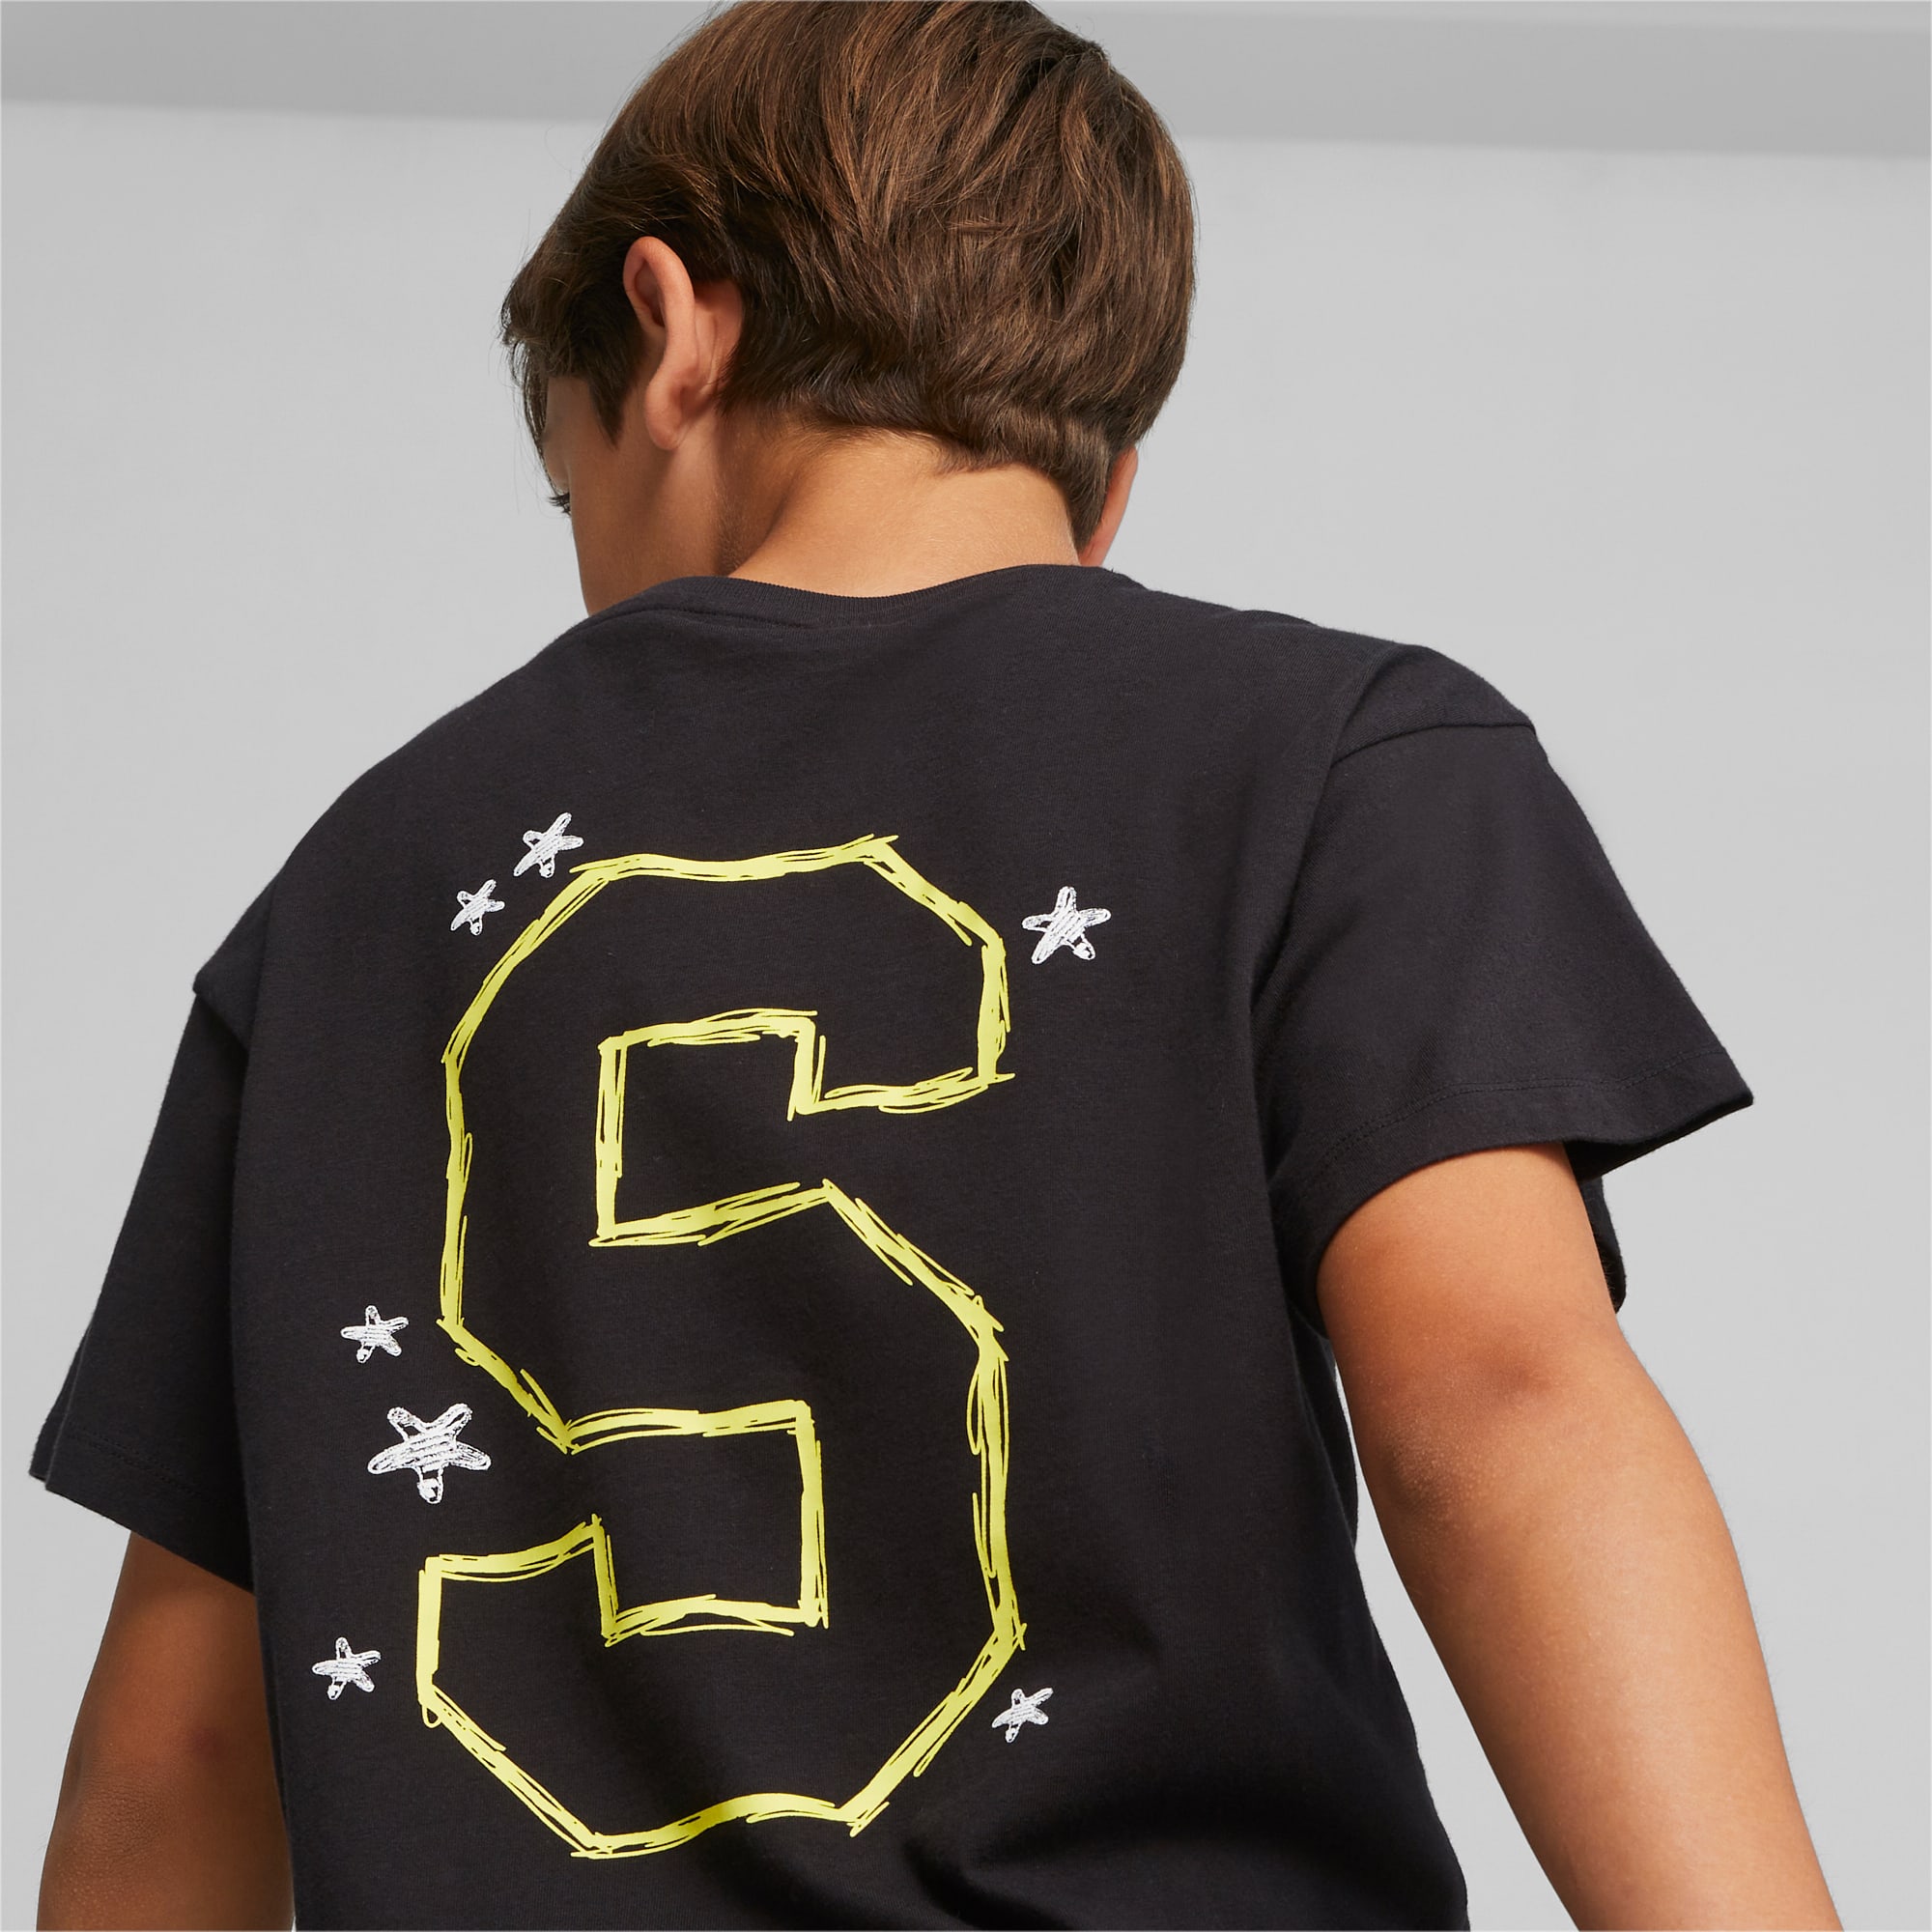 PUMA X SPONGEBOB SCHWAMMKOPF Graphic T-Shirt Teenager Für Kinder, Schwarz, Größe: 128, Kleidung